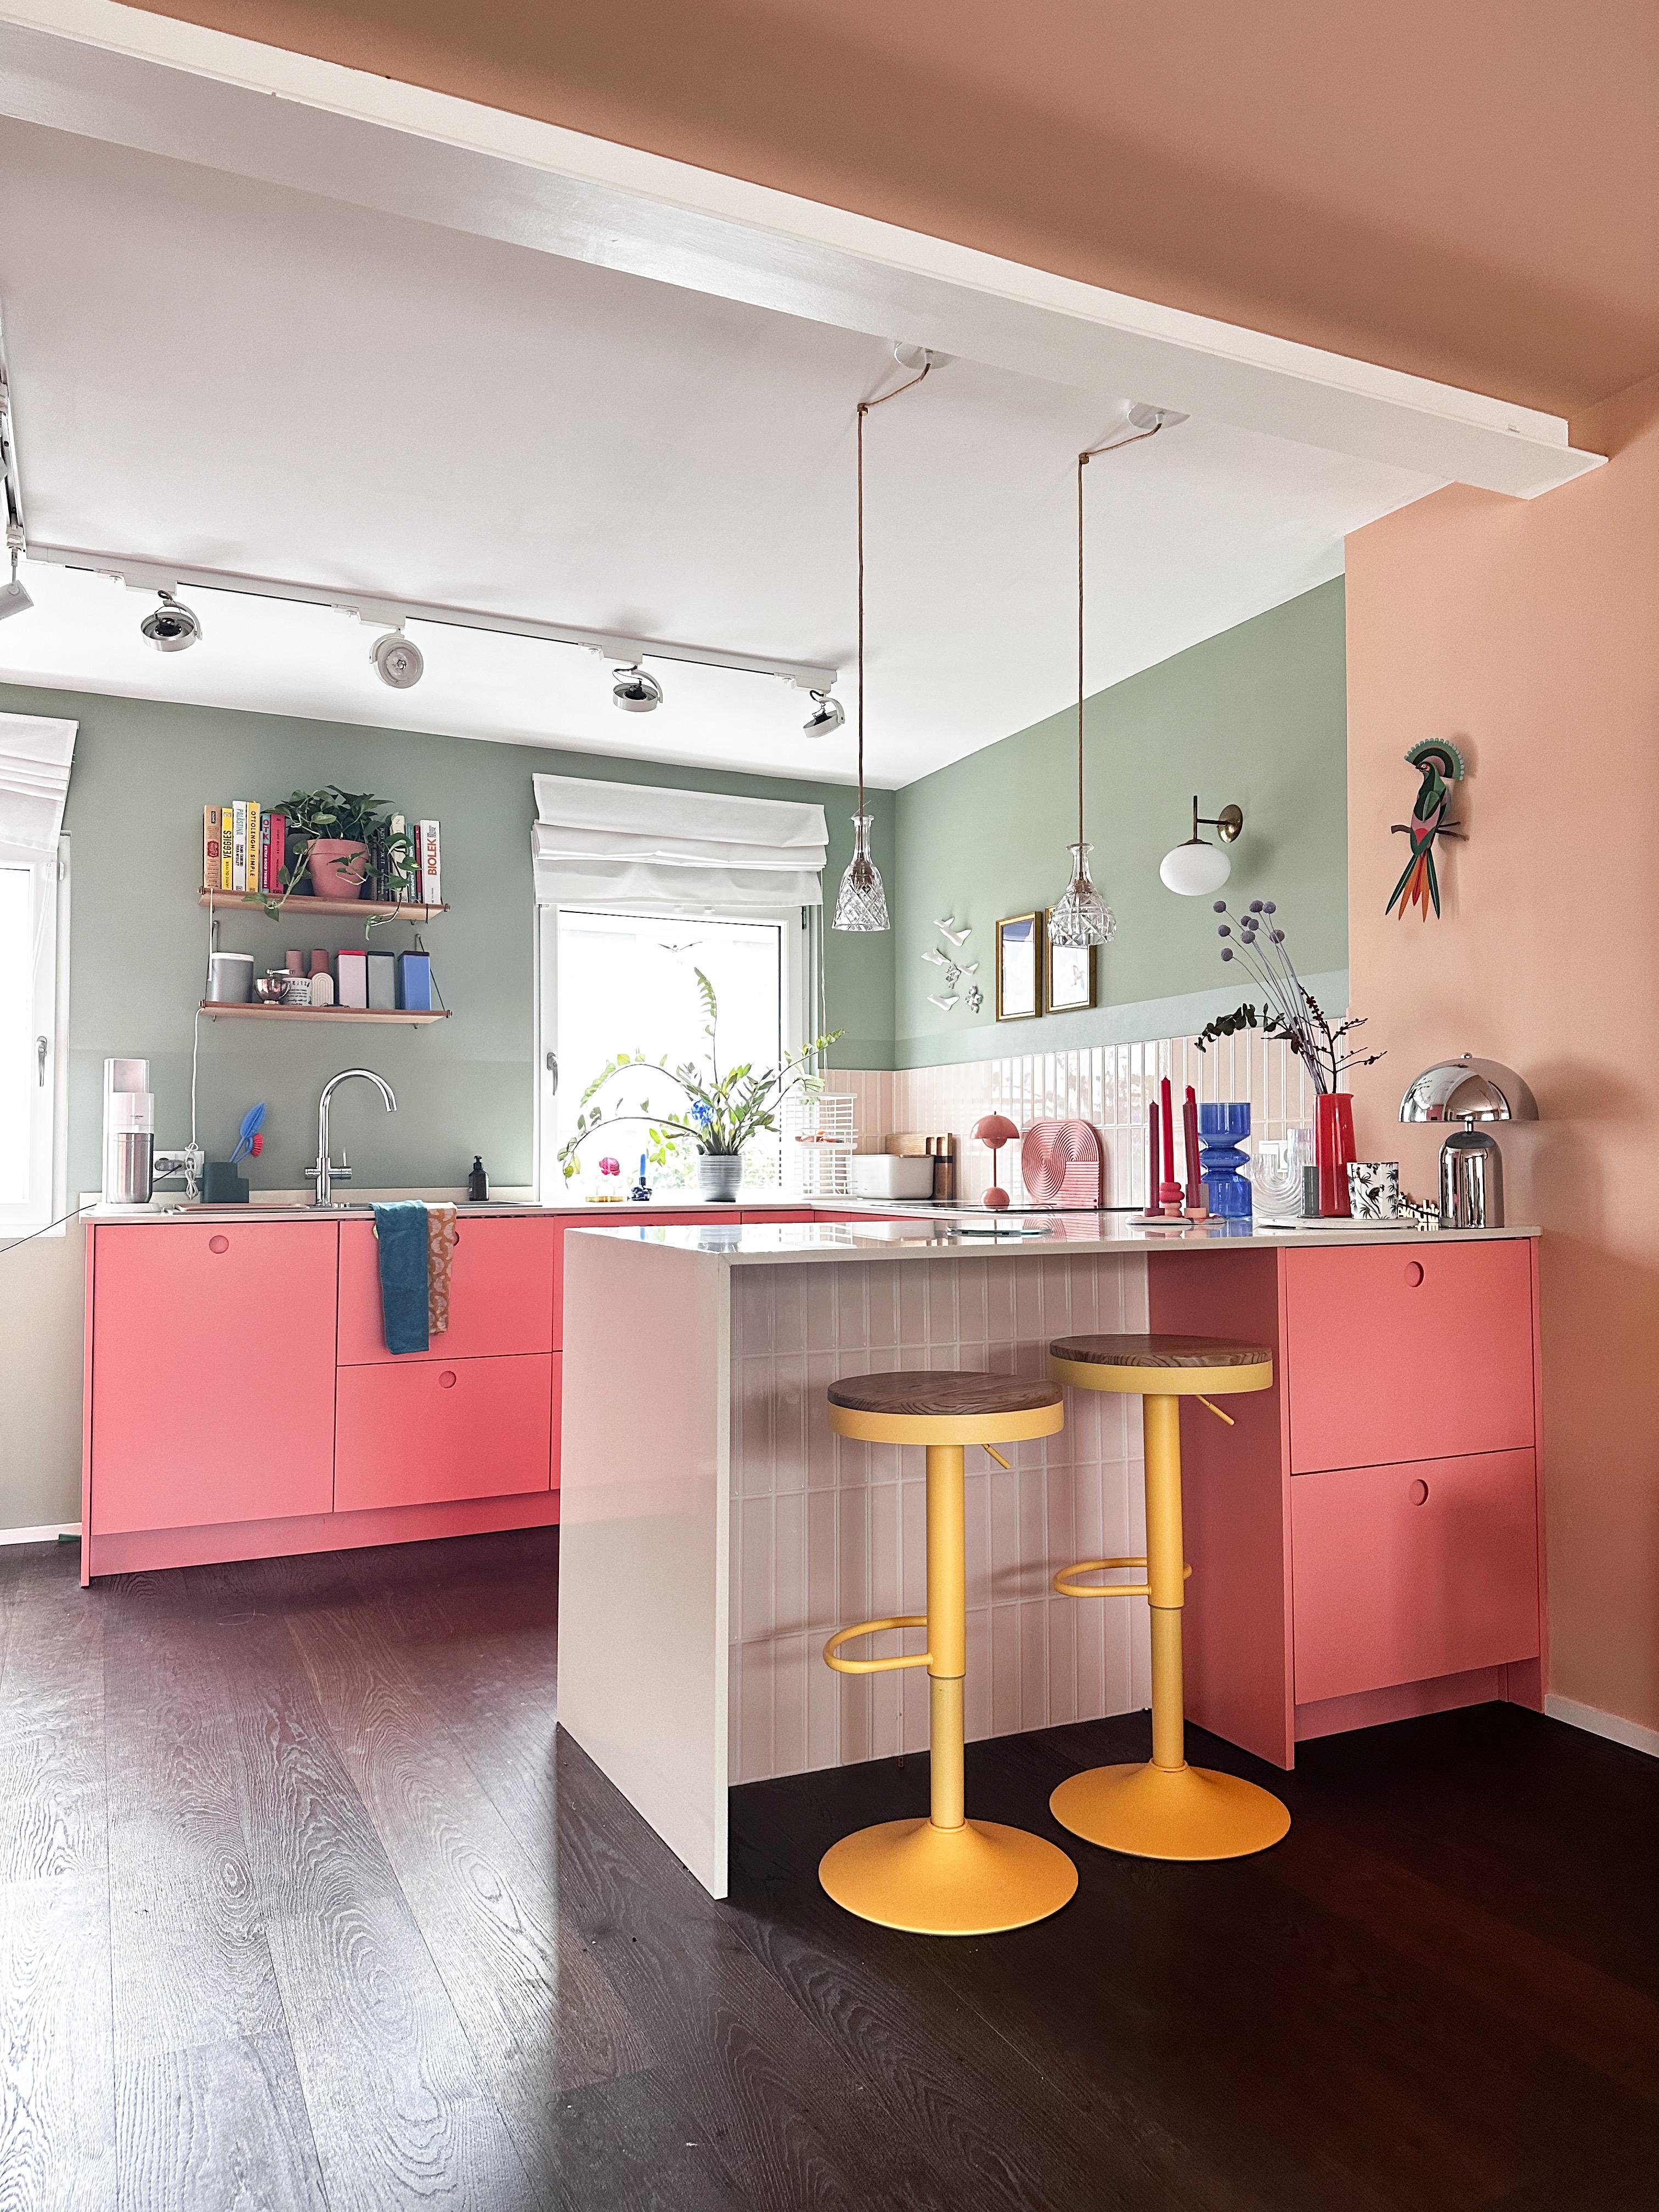 2019 sind wir in unser kernsaniertes Haus on Köln eingezogen. Natürlich auch mit neue Küche. Damals stand zunächst die Farbe „rosa“ zur Debatte, gewonnen hat Flamingo!!